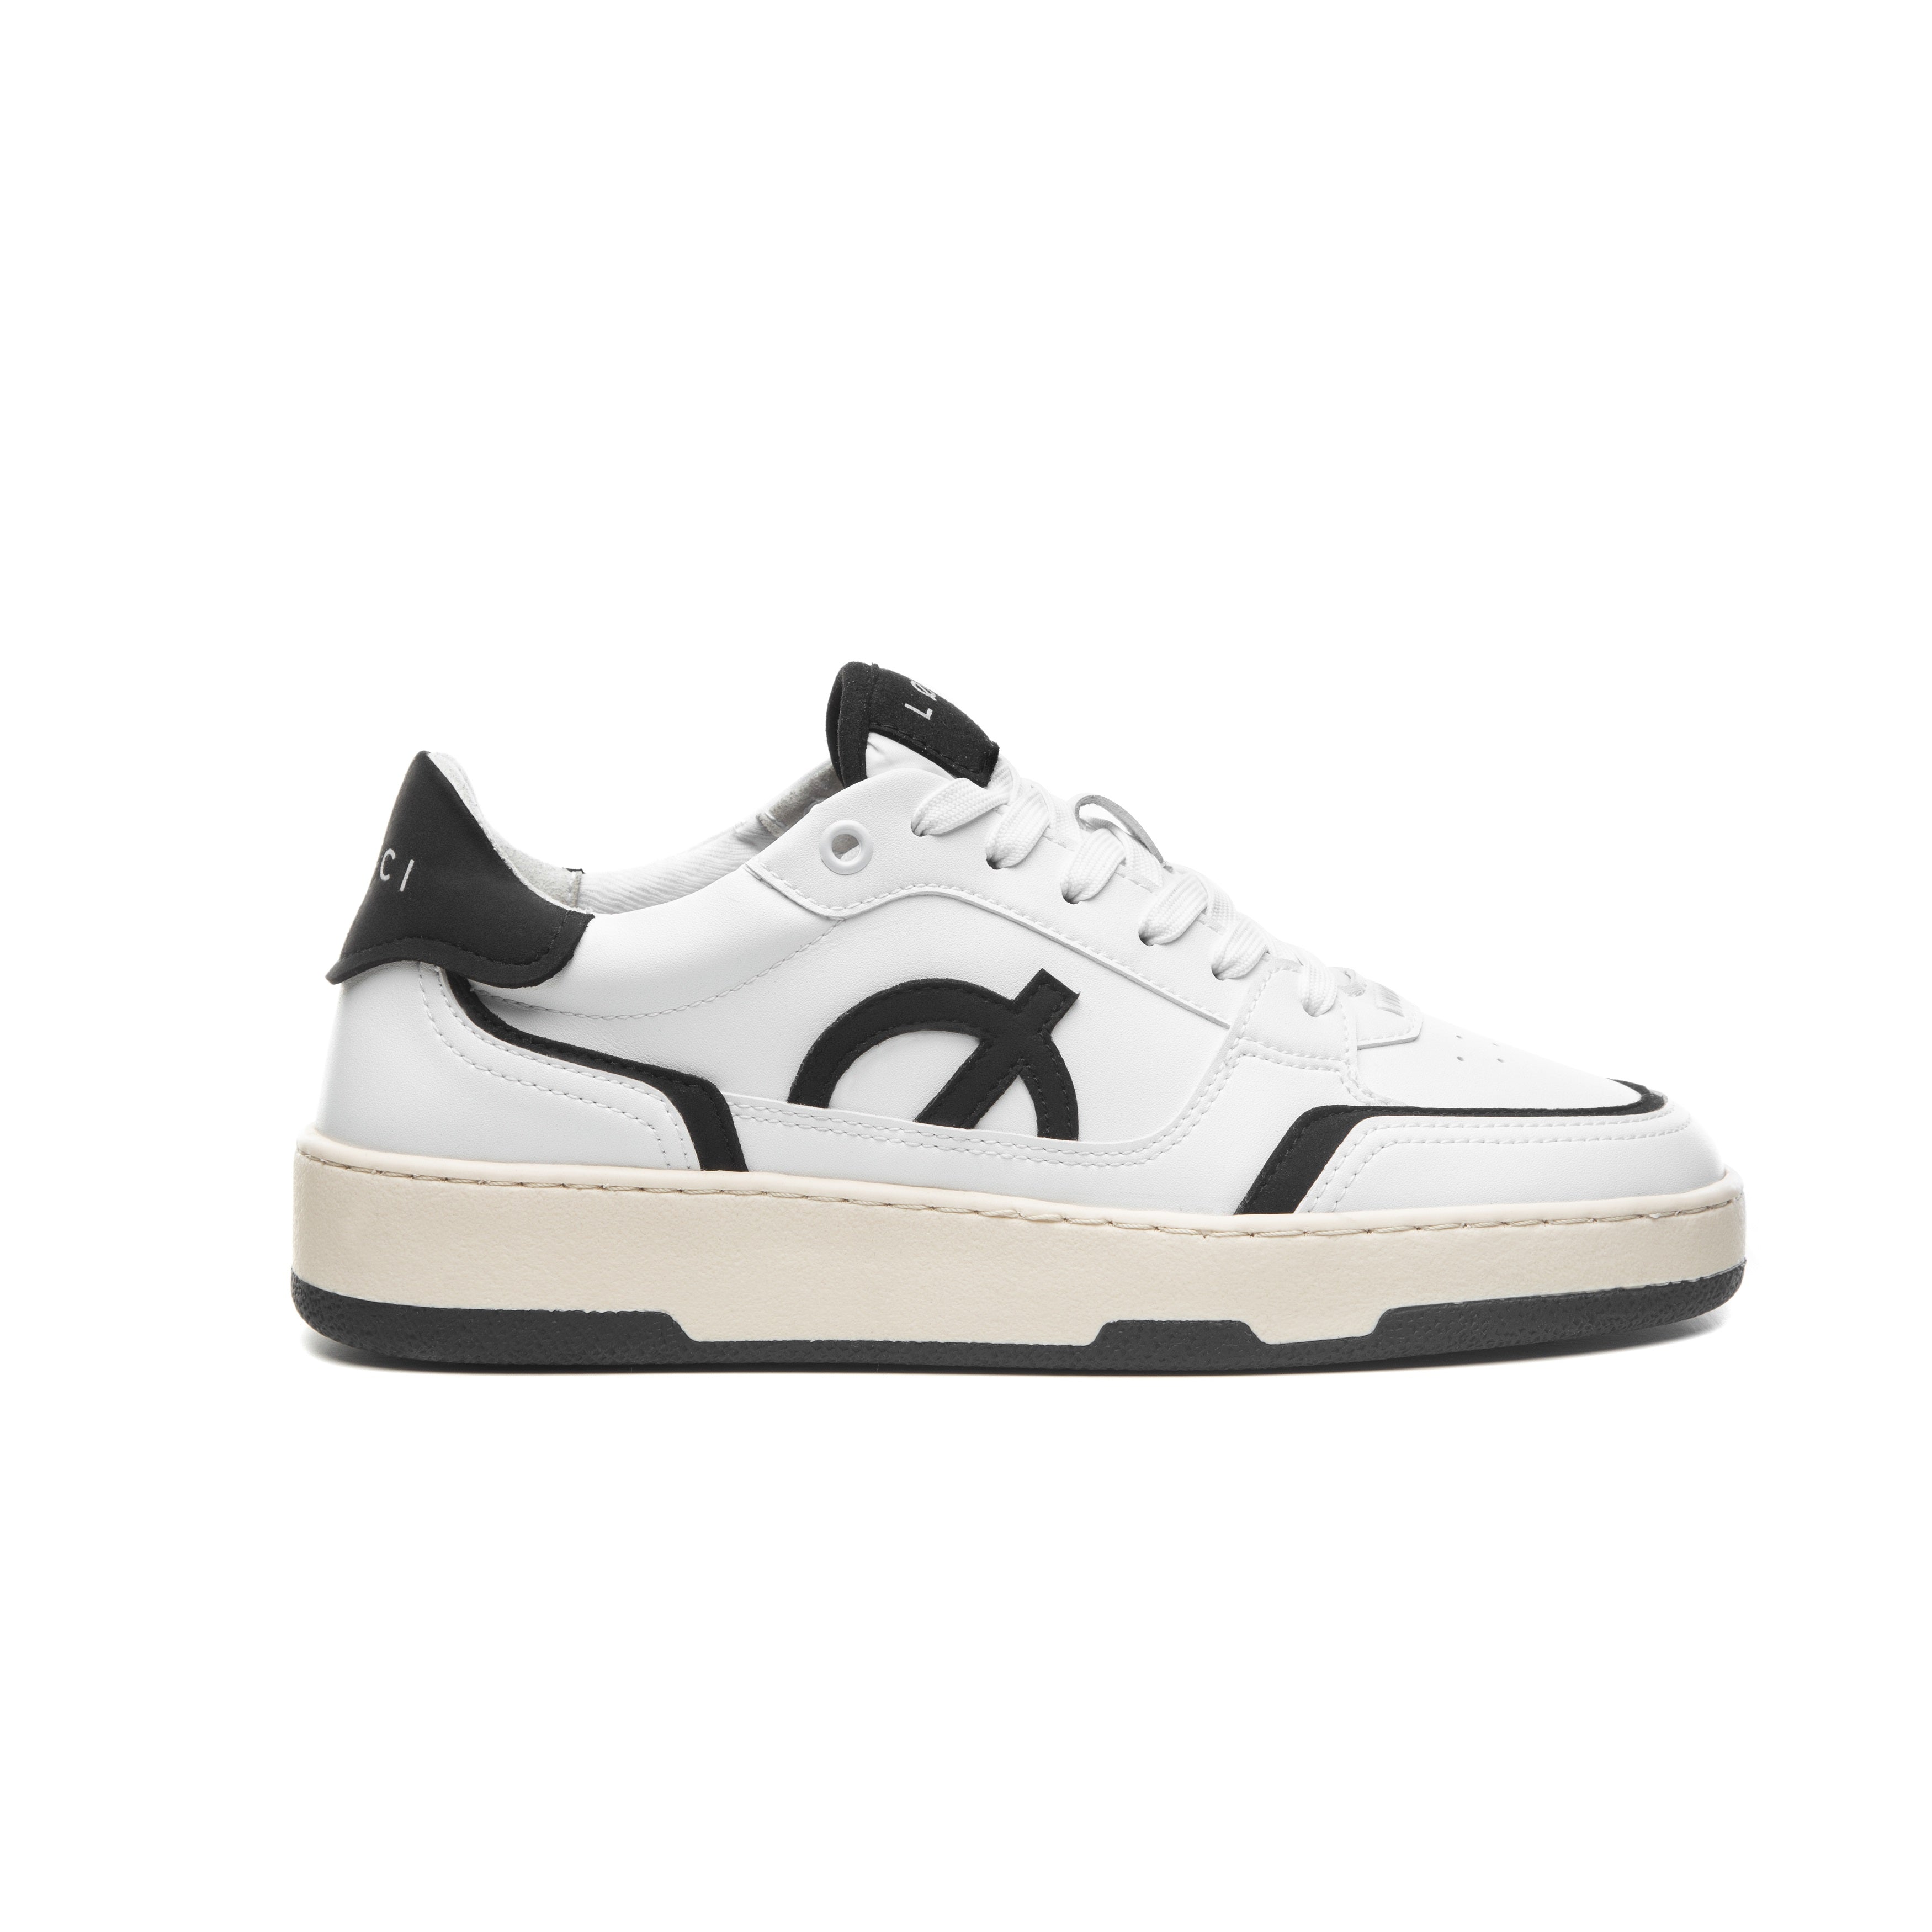 Loci Neo Sneaker White/Black/Cream 3 